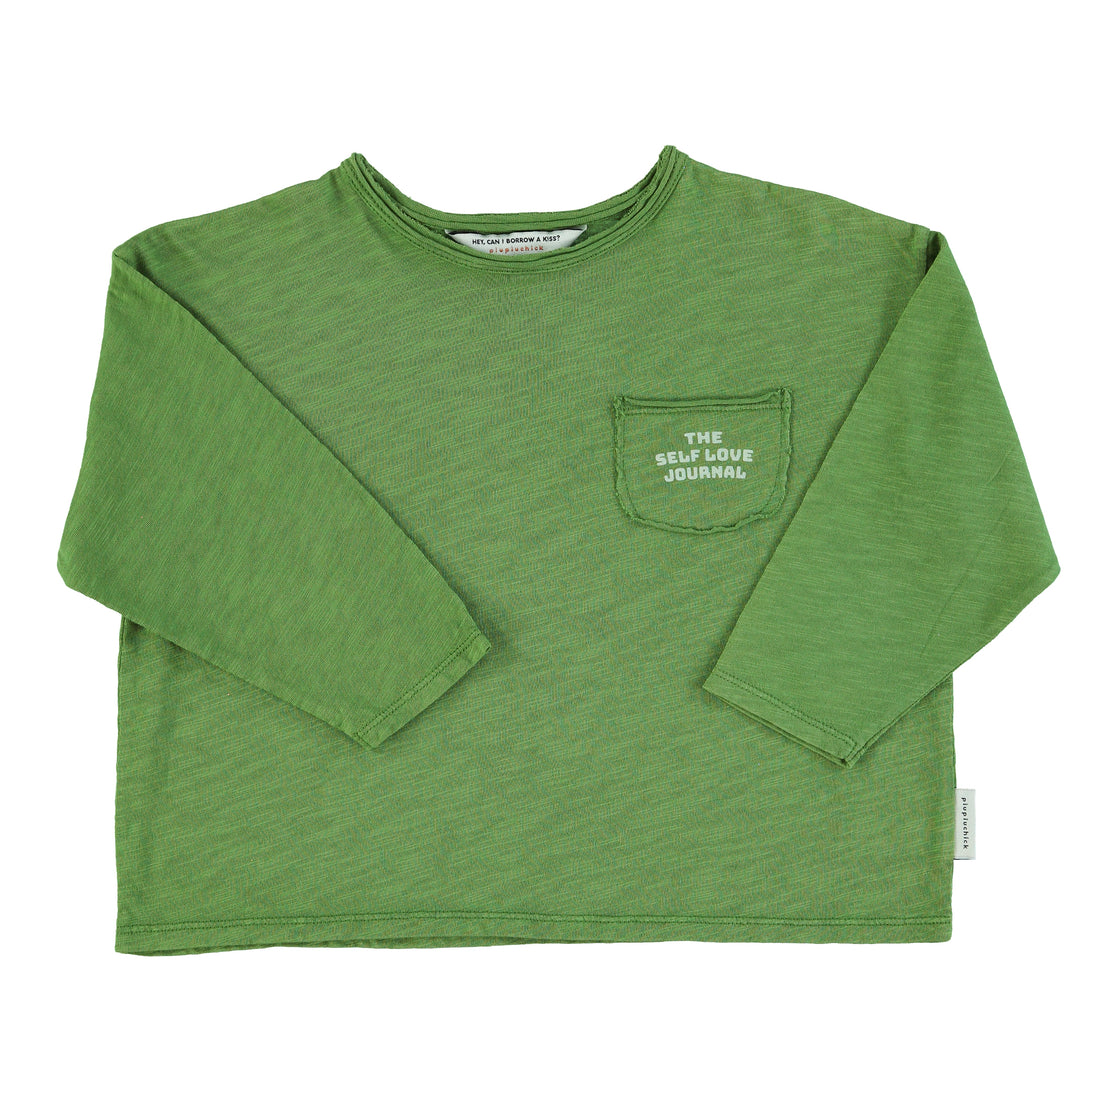 Piupiuchick - Kinder Shirt grün vida bonita aus Baumwolle